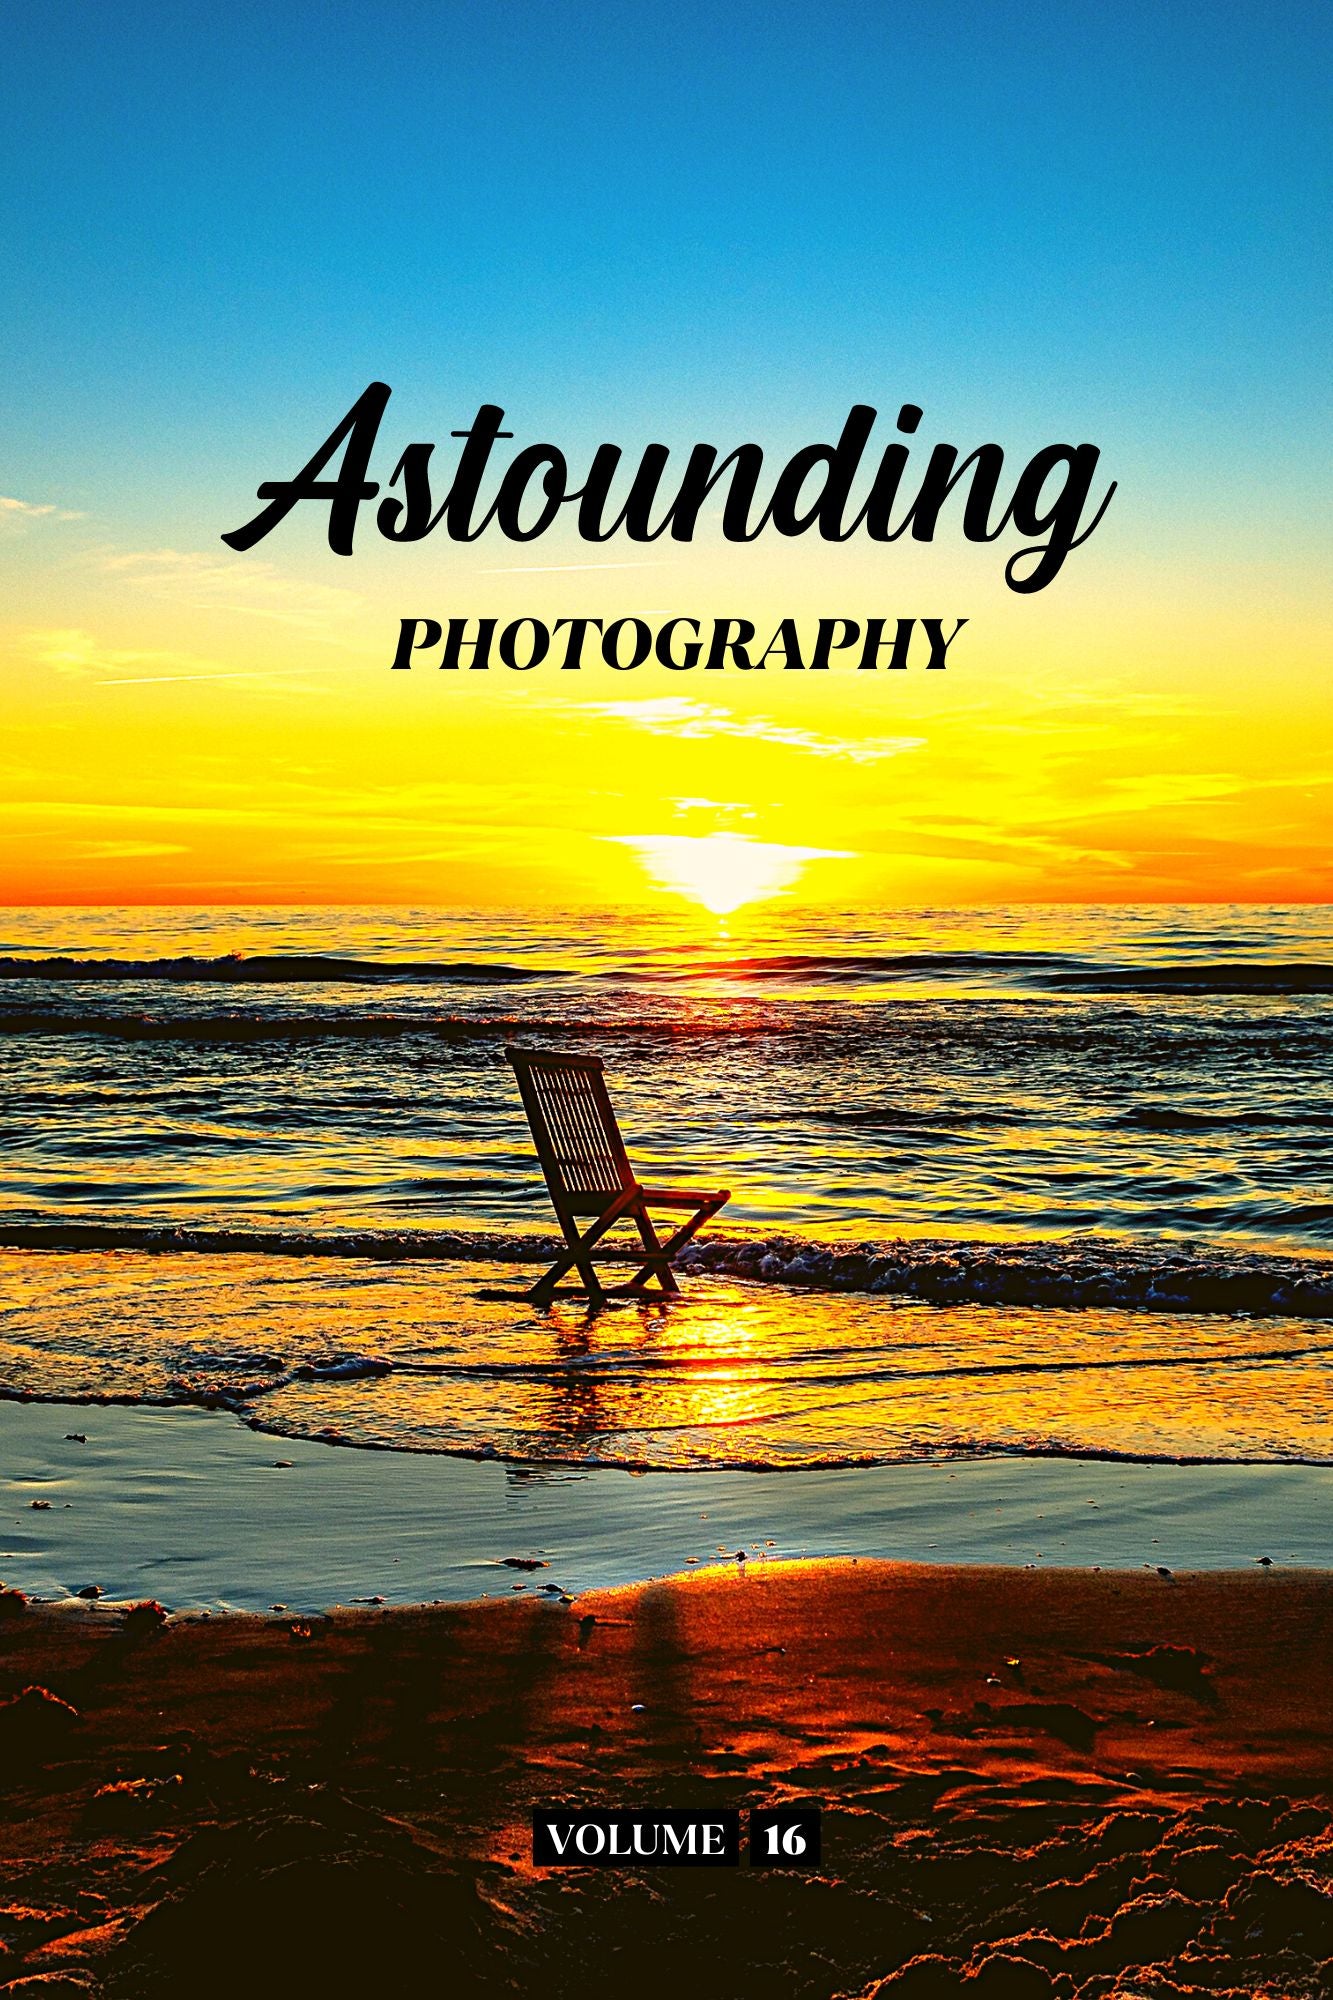 Astounding Photography Volume 16 (Physical Book Pre-Order)